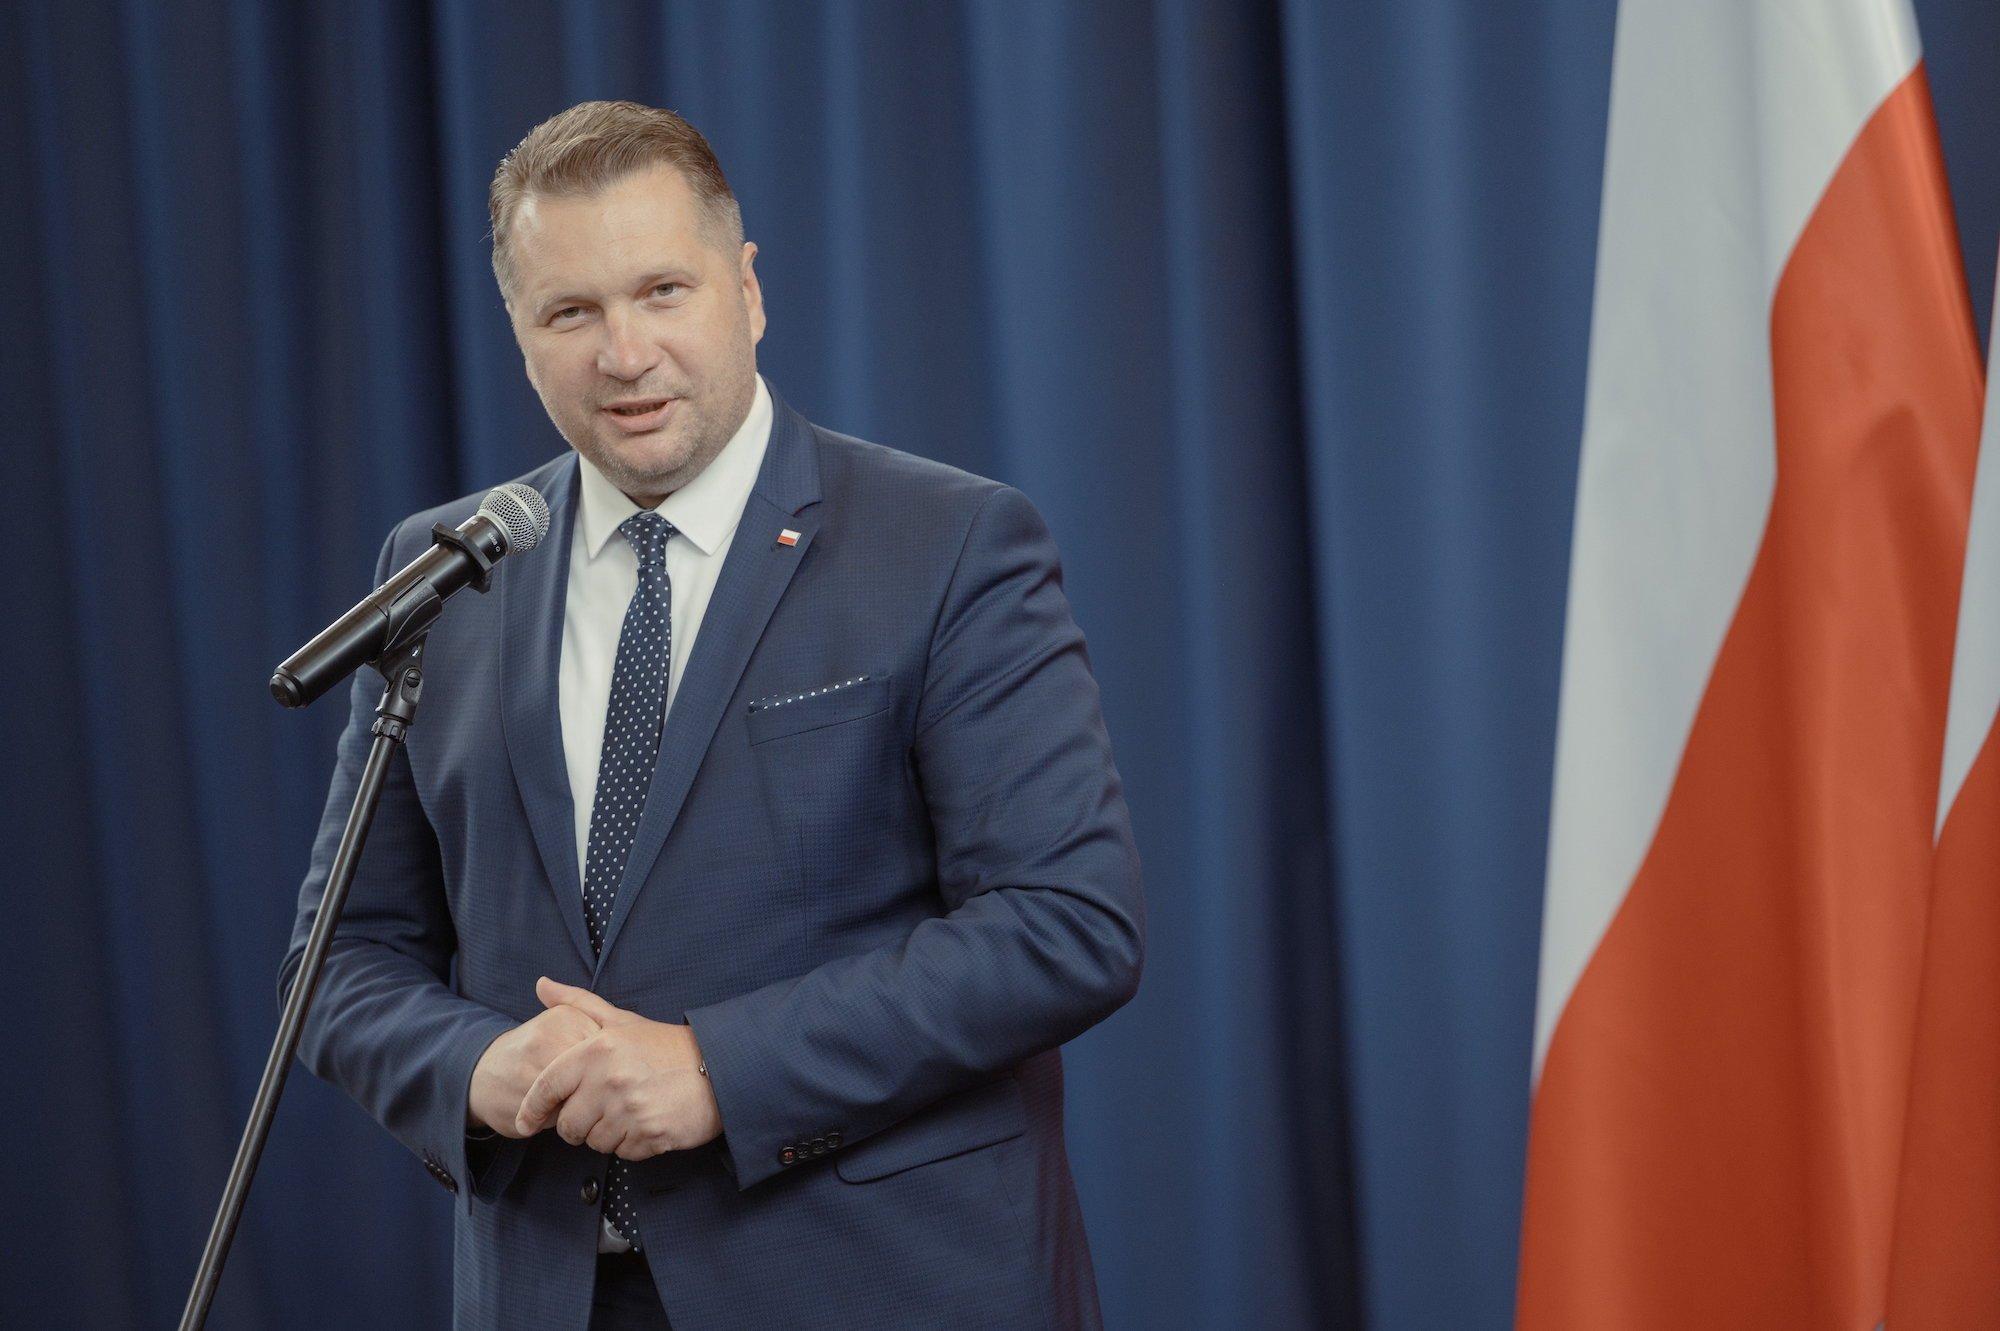 Minister Edukacji Przemysław Czarnek przemawia do mikrofonu ubrany w szaroniebieski garnitur i granatowy krawat w białe kropki.